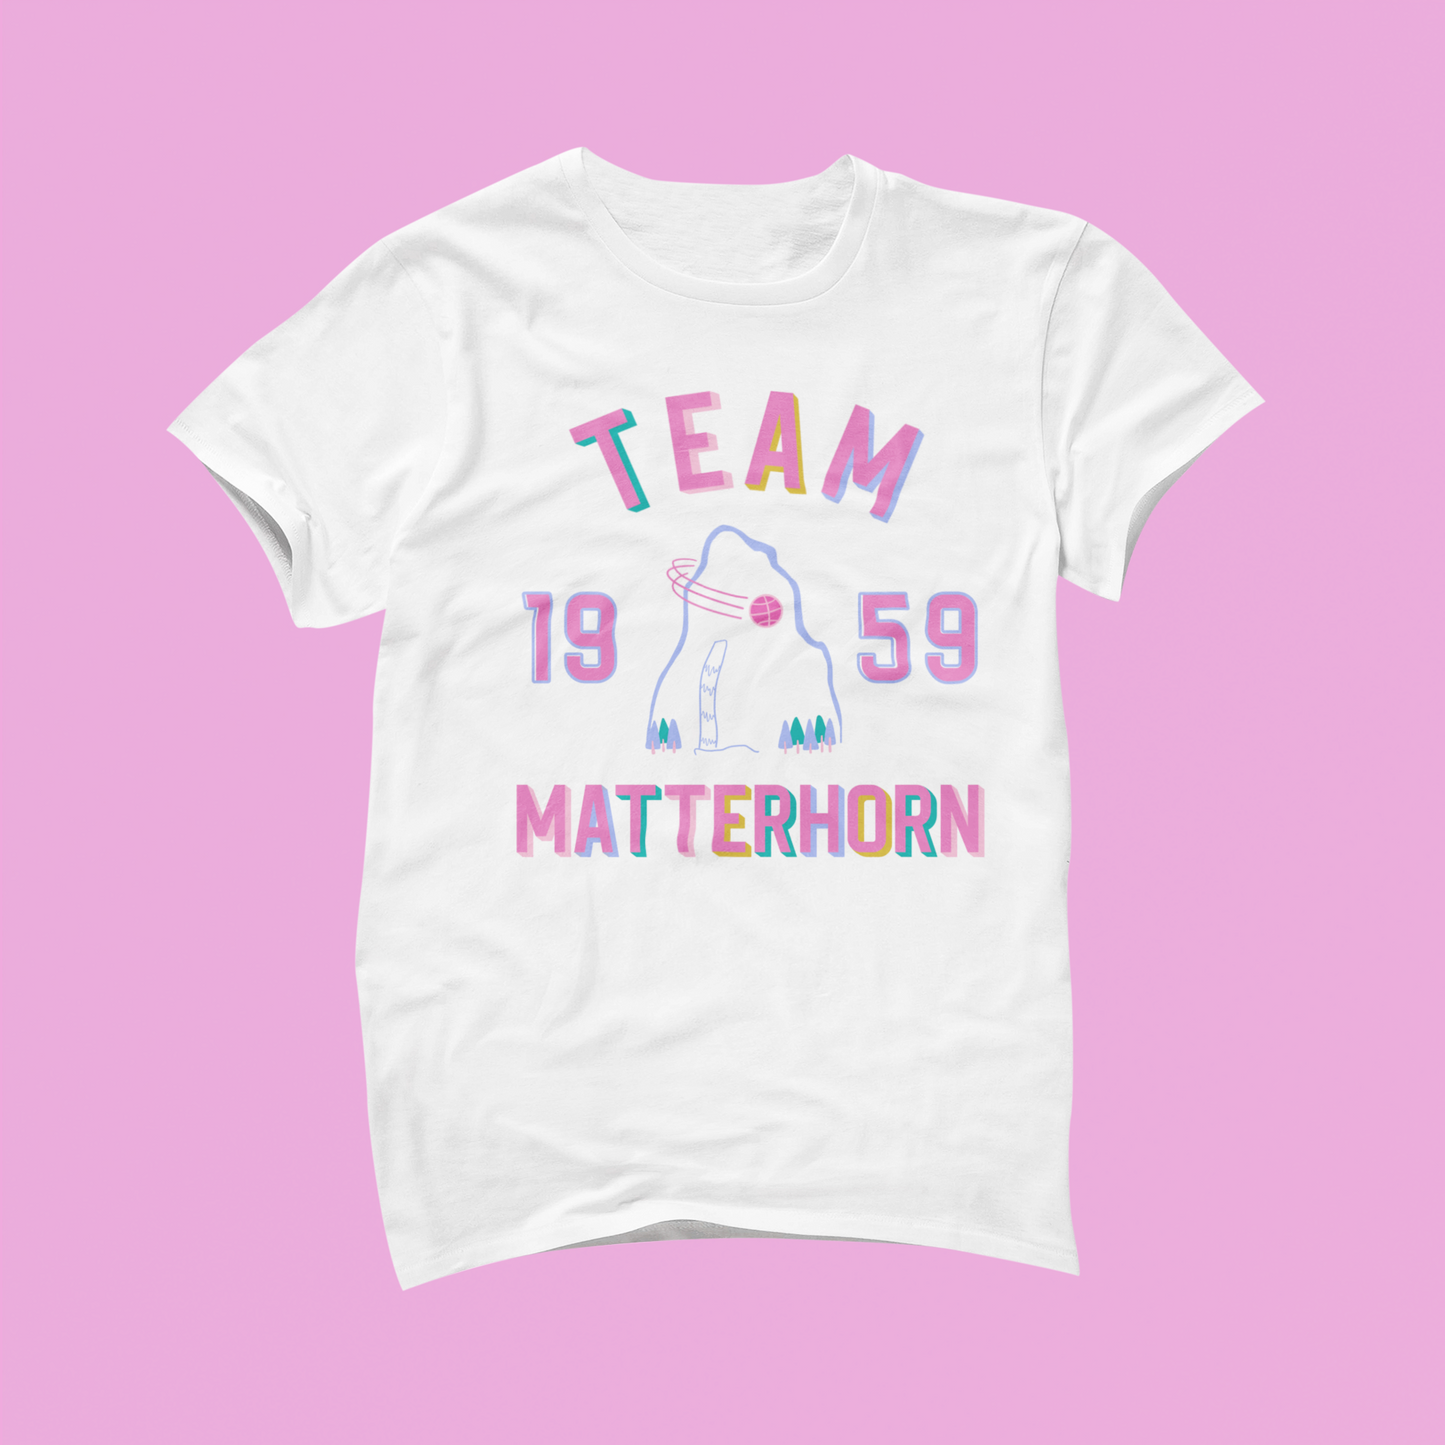 Team Matterhorn Basketball